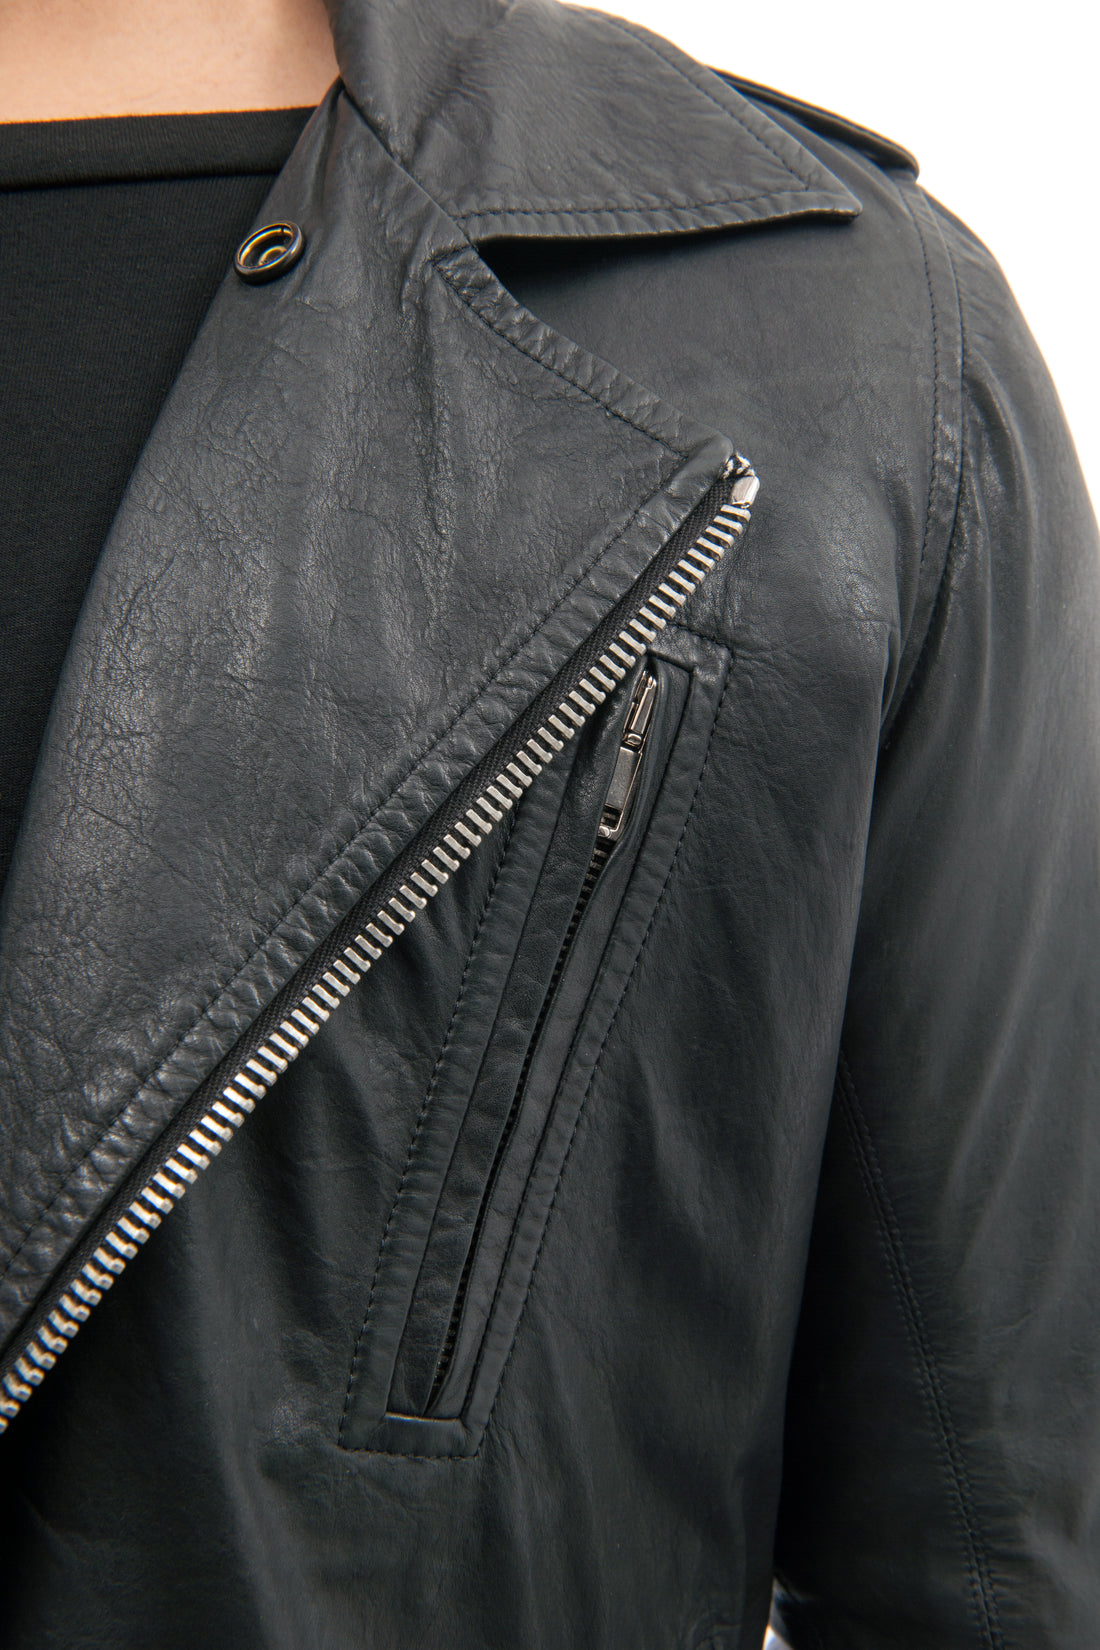 Rick Owens Black Leather Zip Slim Biker Jacket